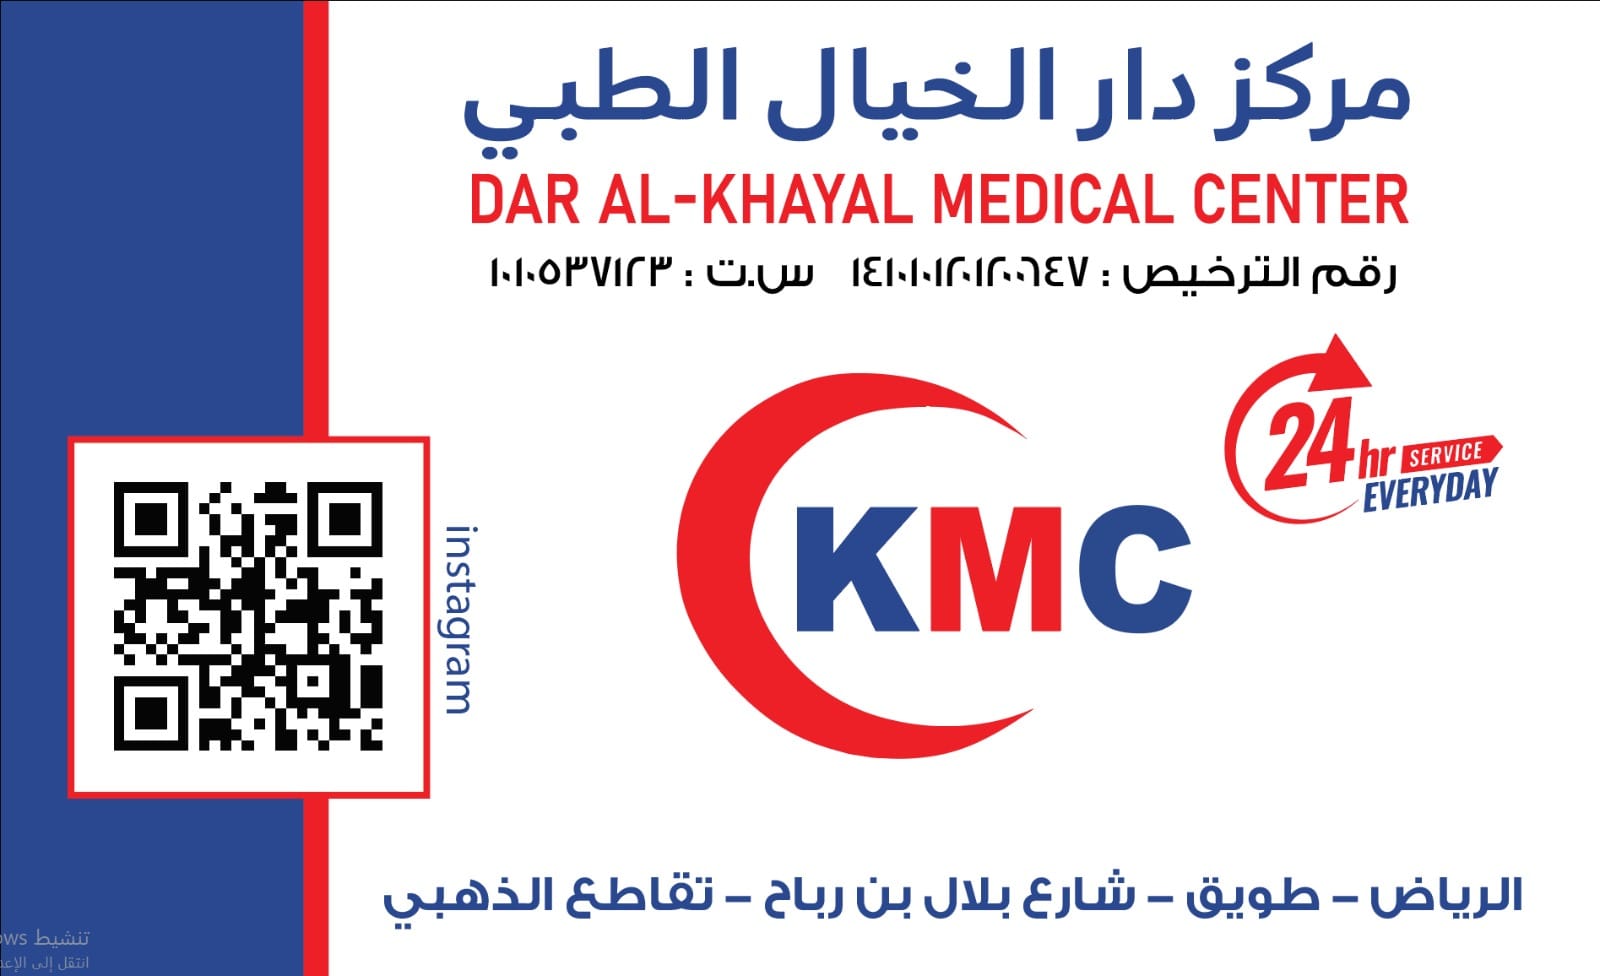 مركز دار الخيال الطبي ( الرياض حي طويق -شارع الذهبي )